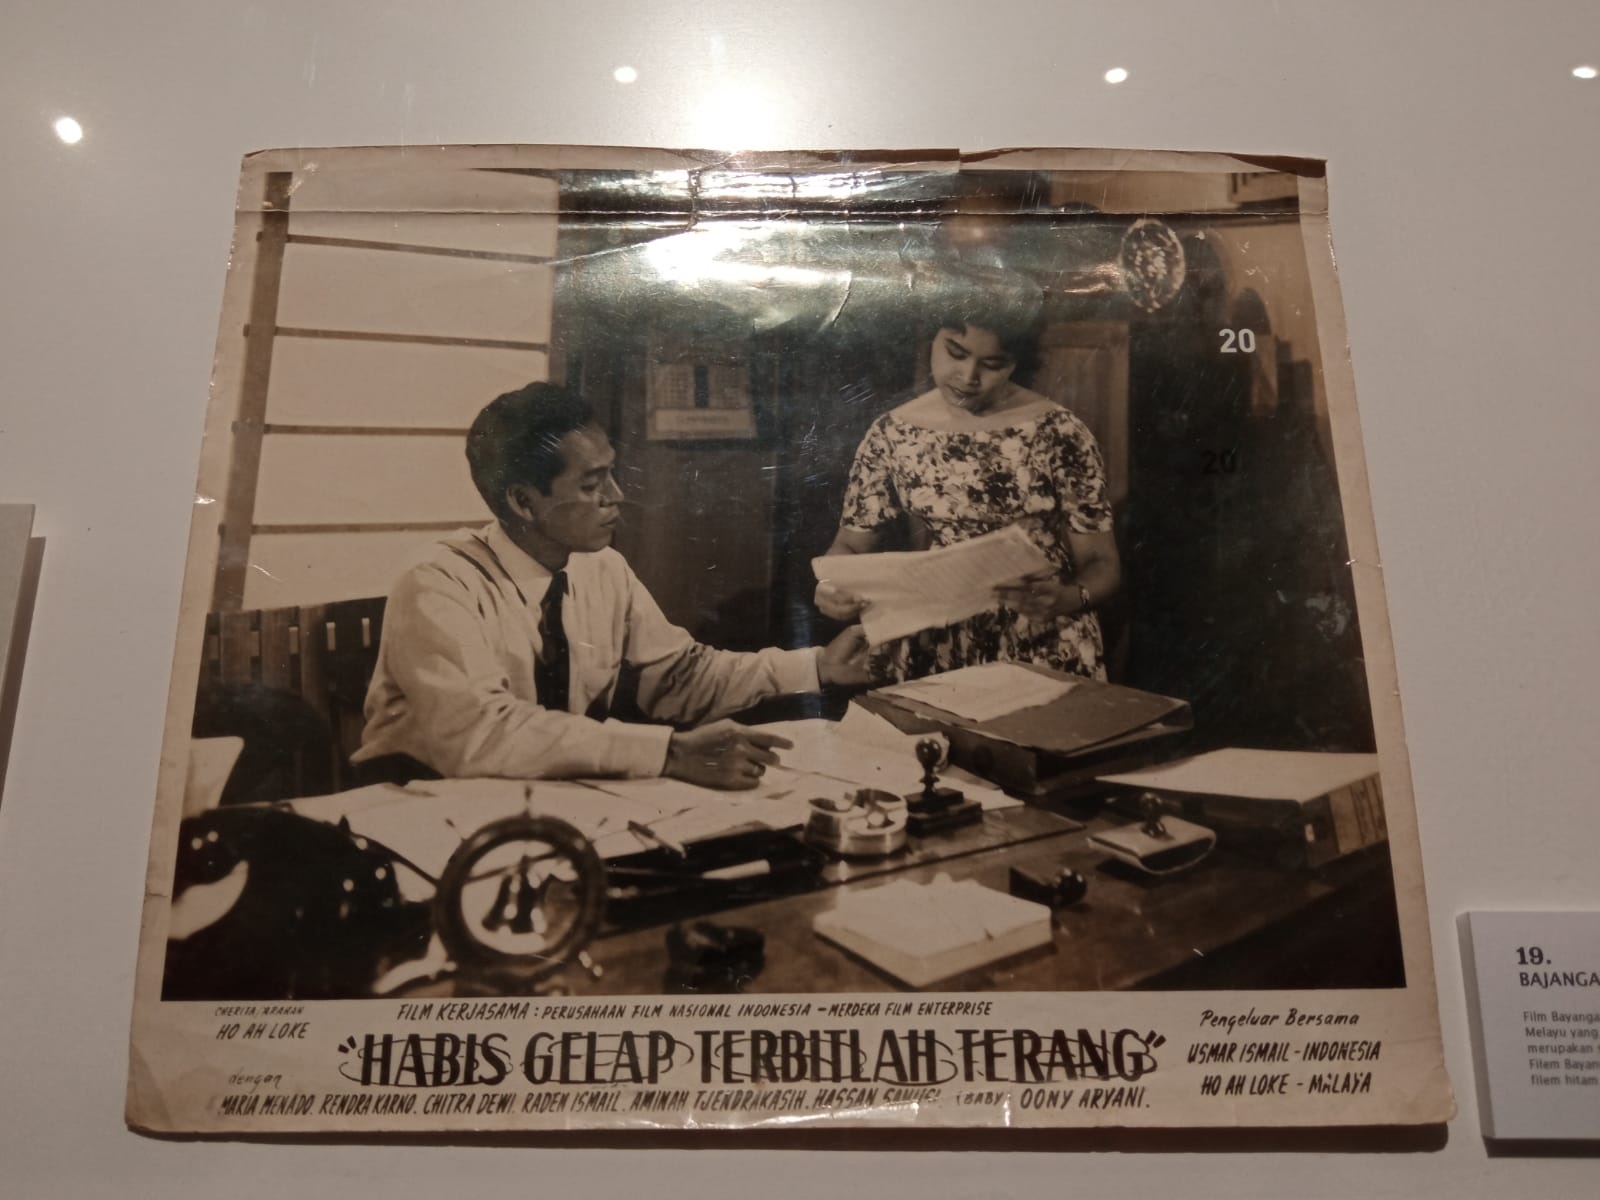 Perjalanan seni Usmar Ismail dimulai dari panggung teater sekolah hingga akhirnya dia mendirikan Perfini. (Sumber gambar: Hypeabis/Diena Lestar)